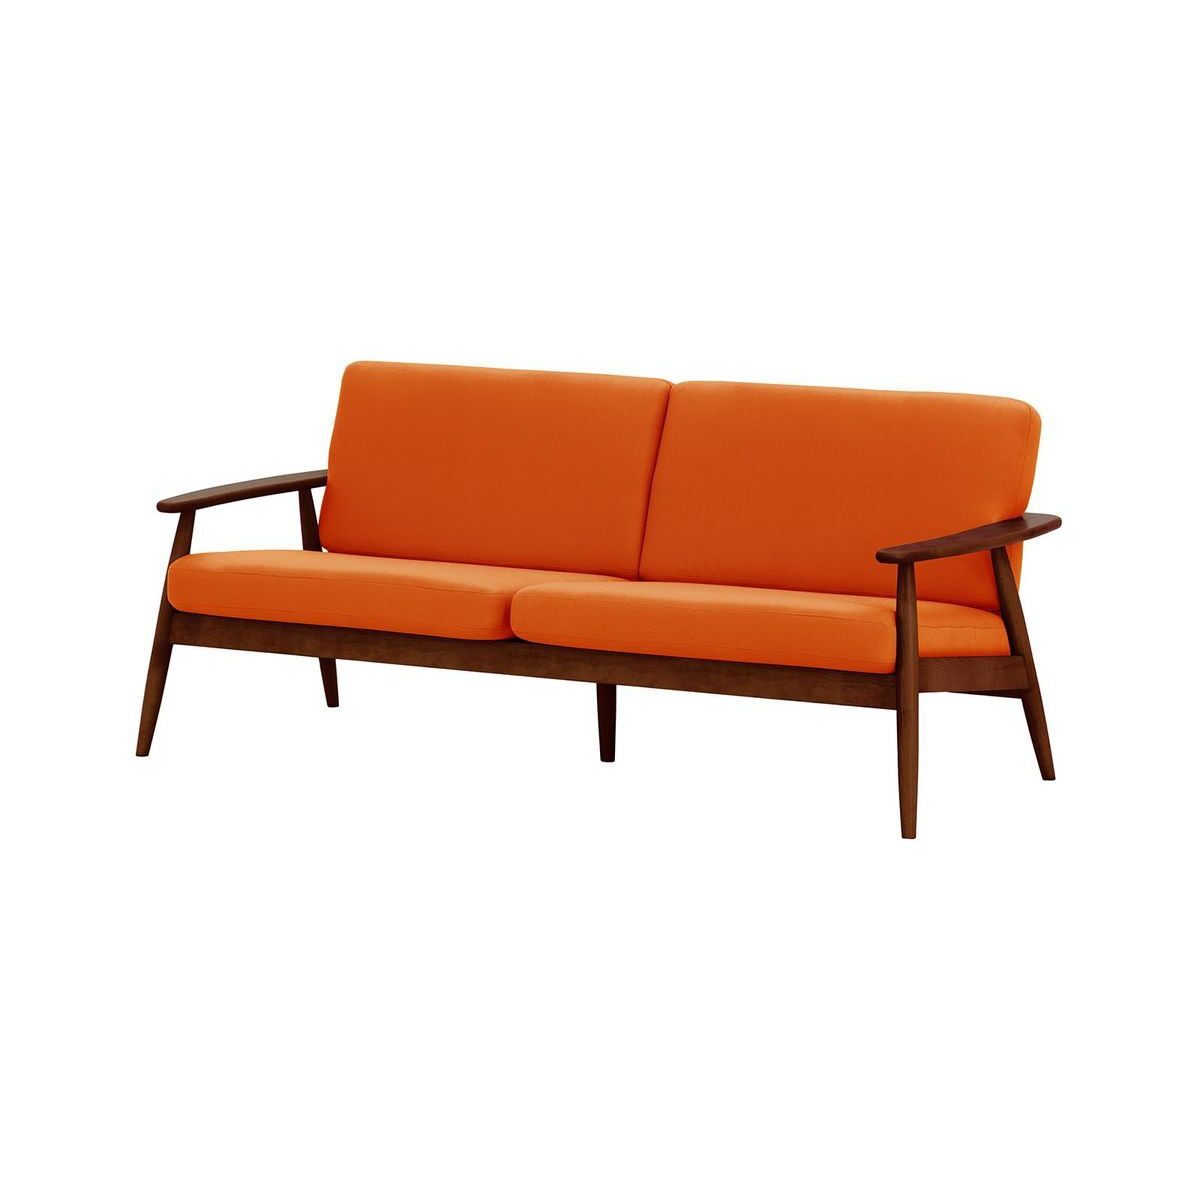 Demure Aqua 3 Seater Garden Sofa, orange, Leg colour: 8007 dark oak - image 1